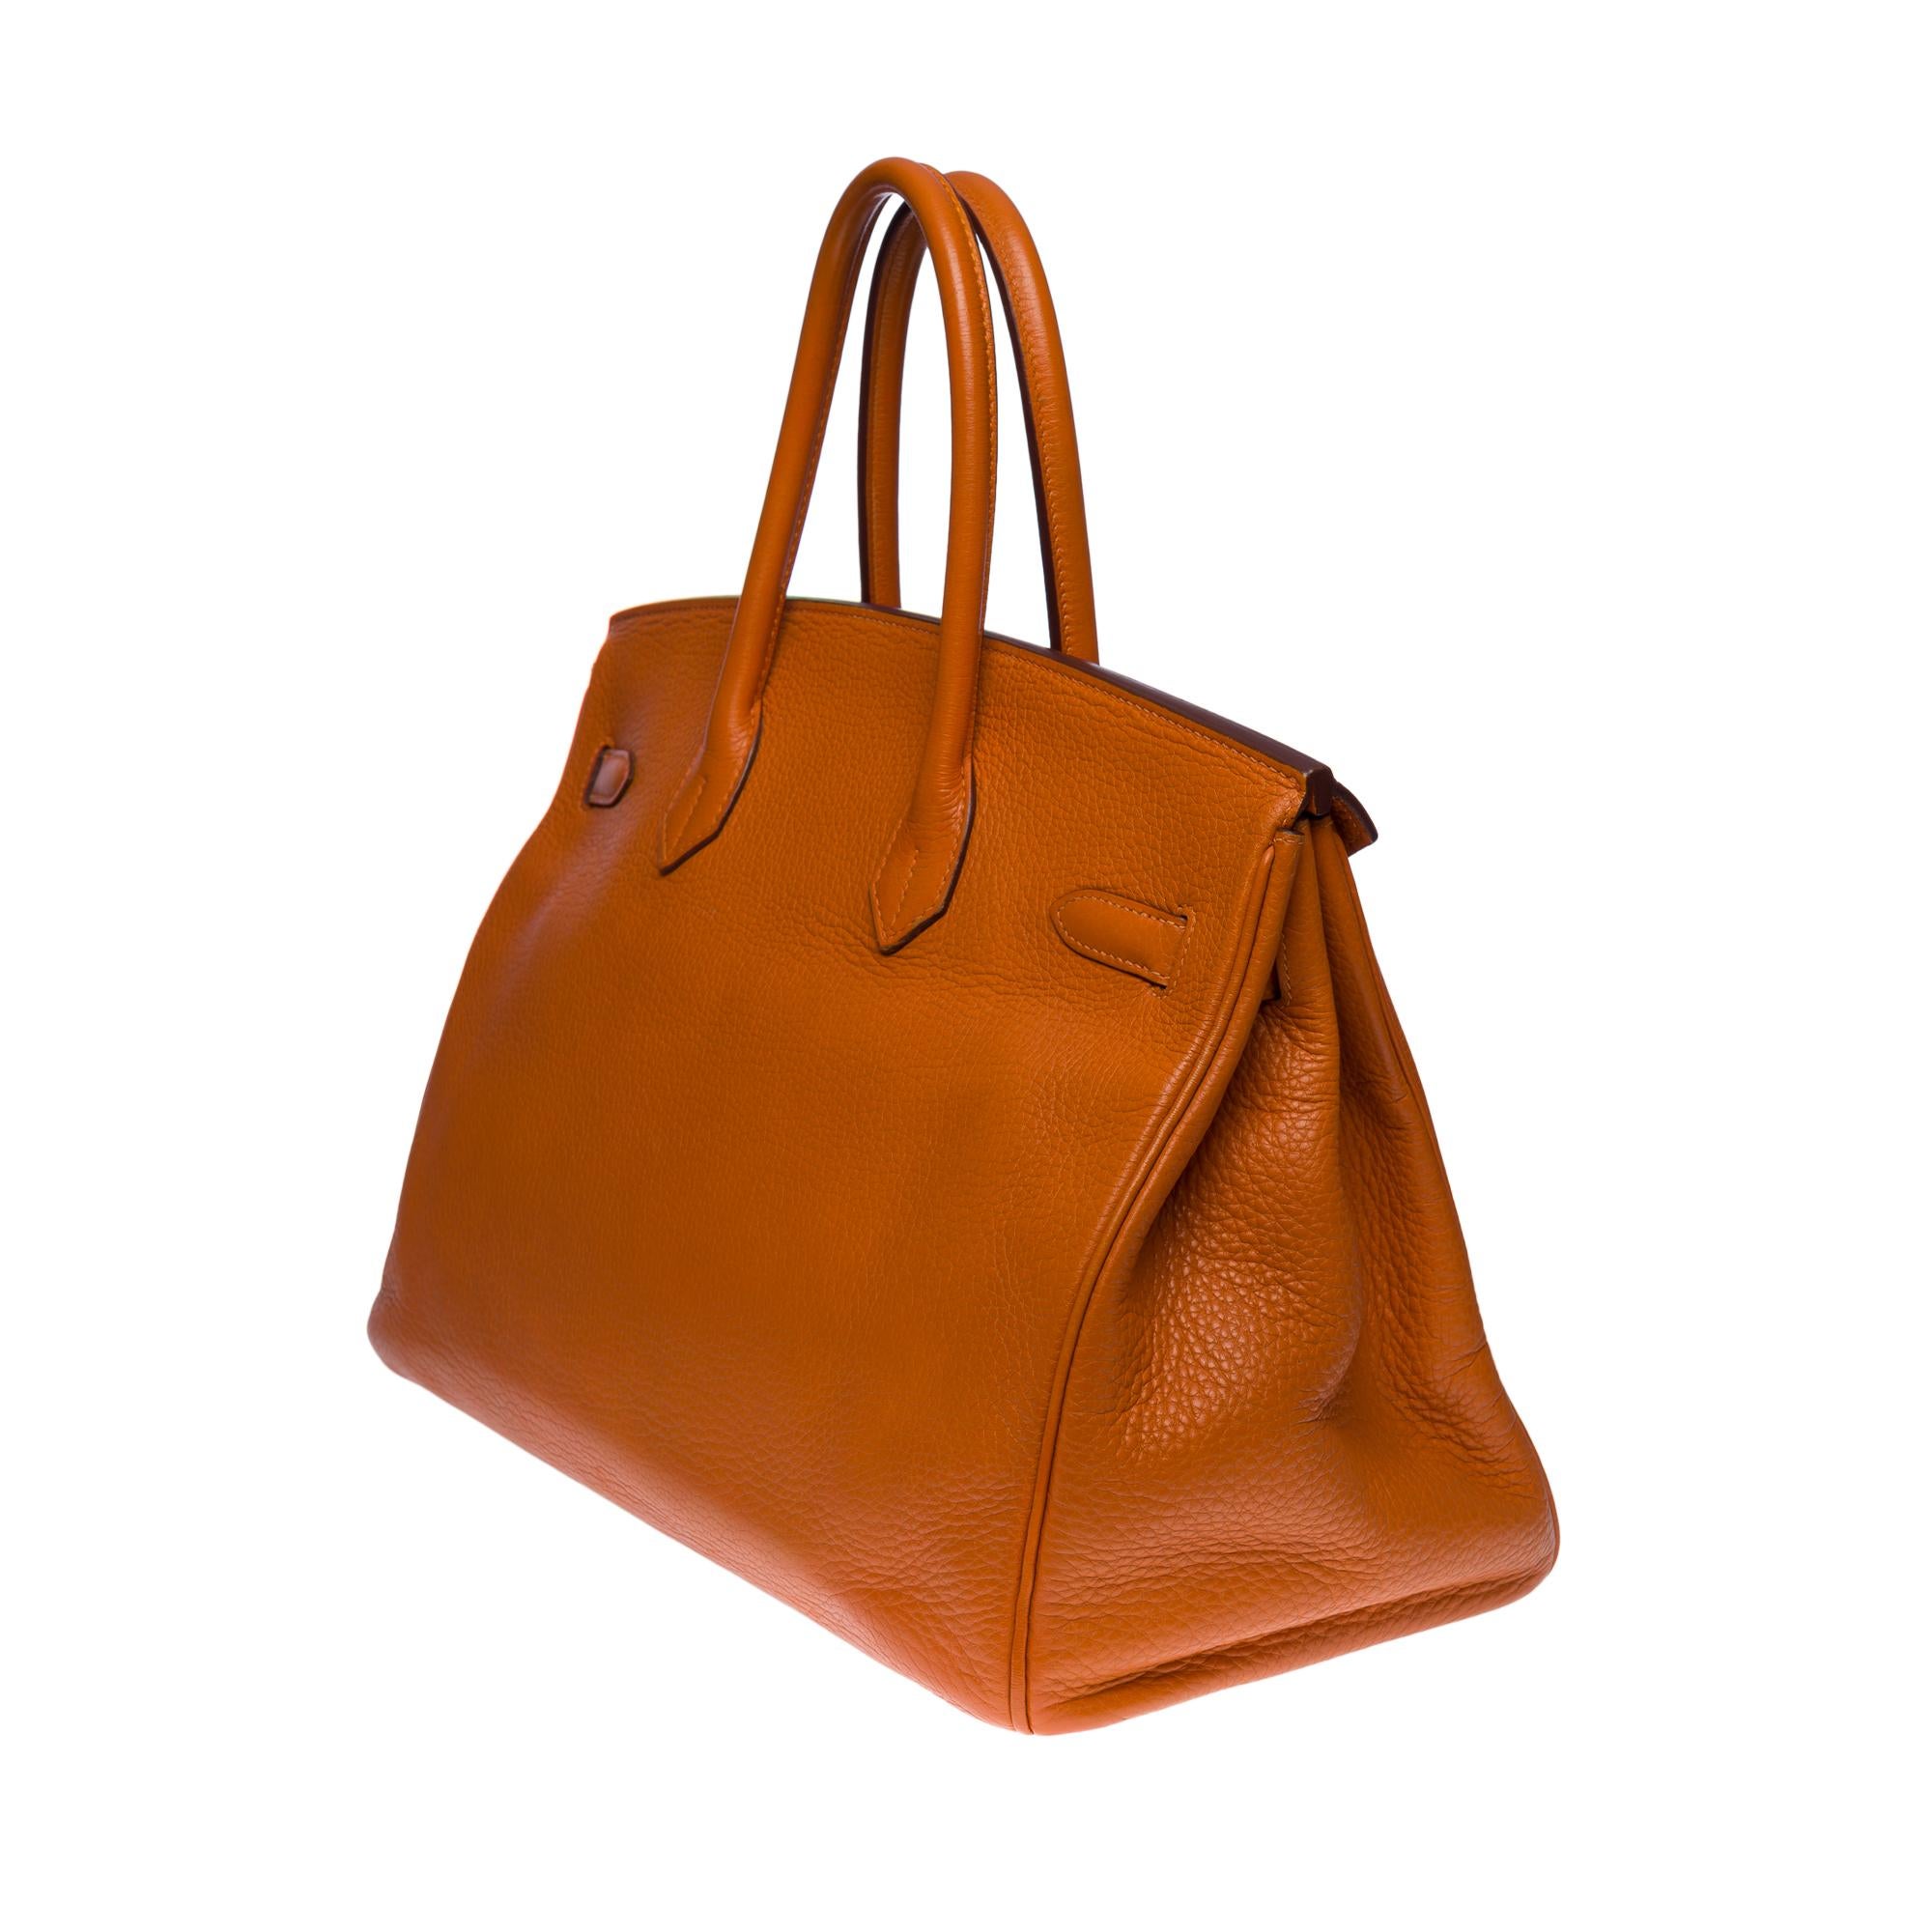 Stunning Hermès Birkin 35 handbag in Orange Togo leather, SHW In Good Condition In Paris, IDF